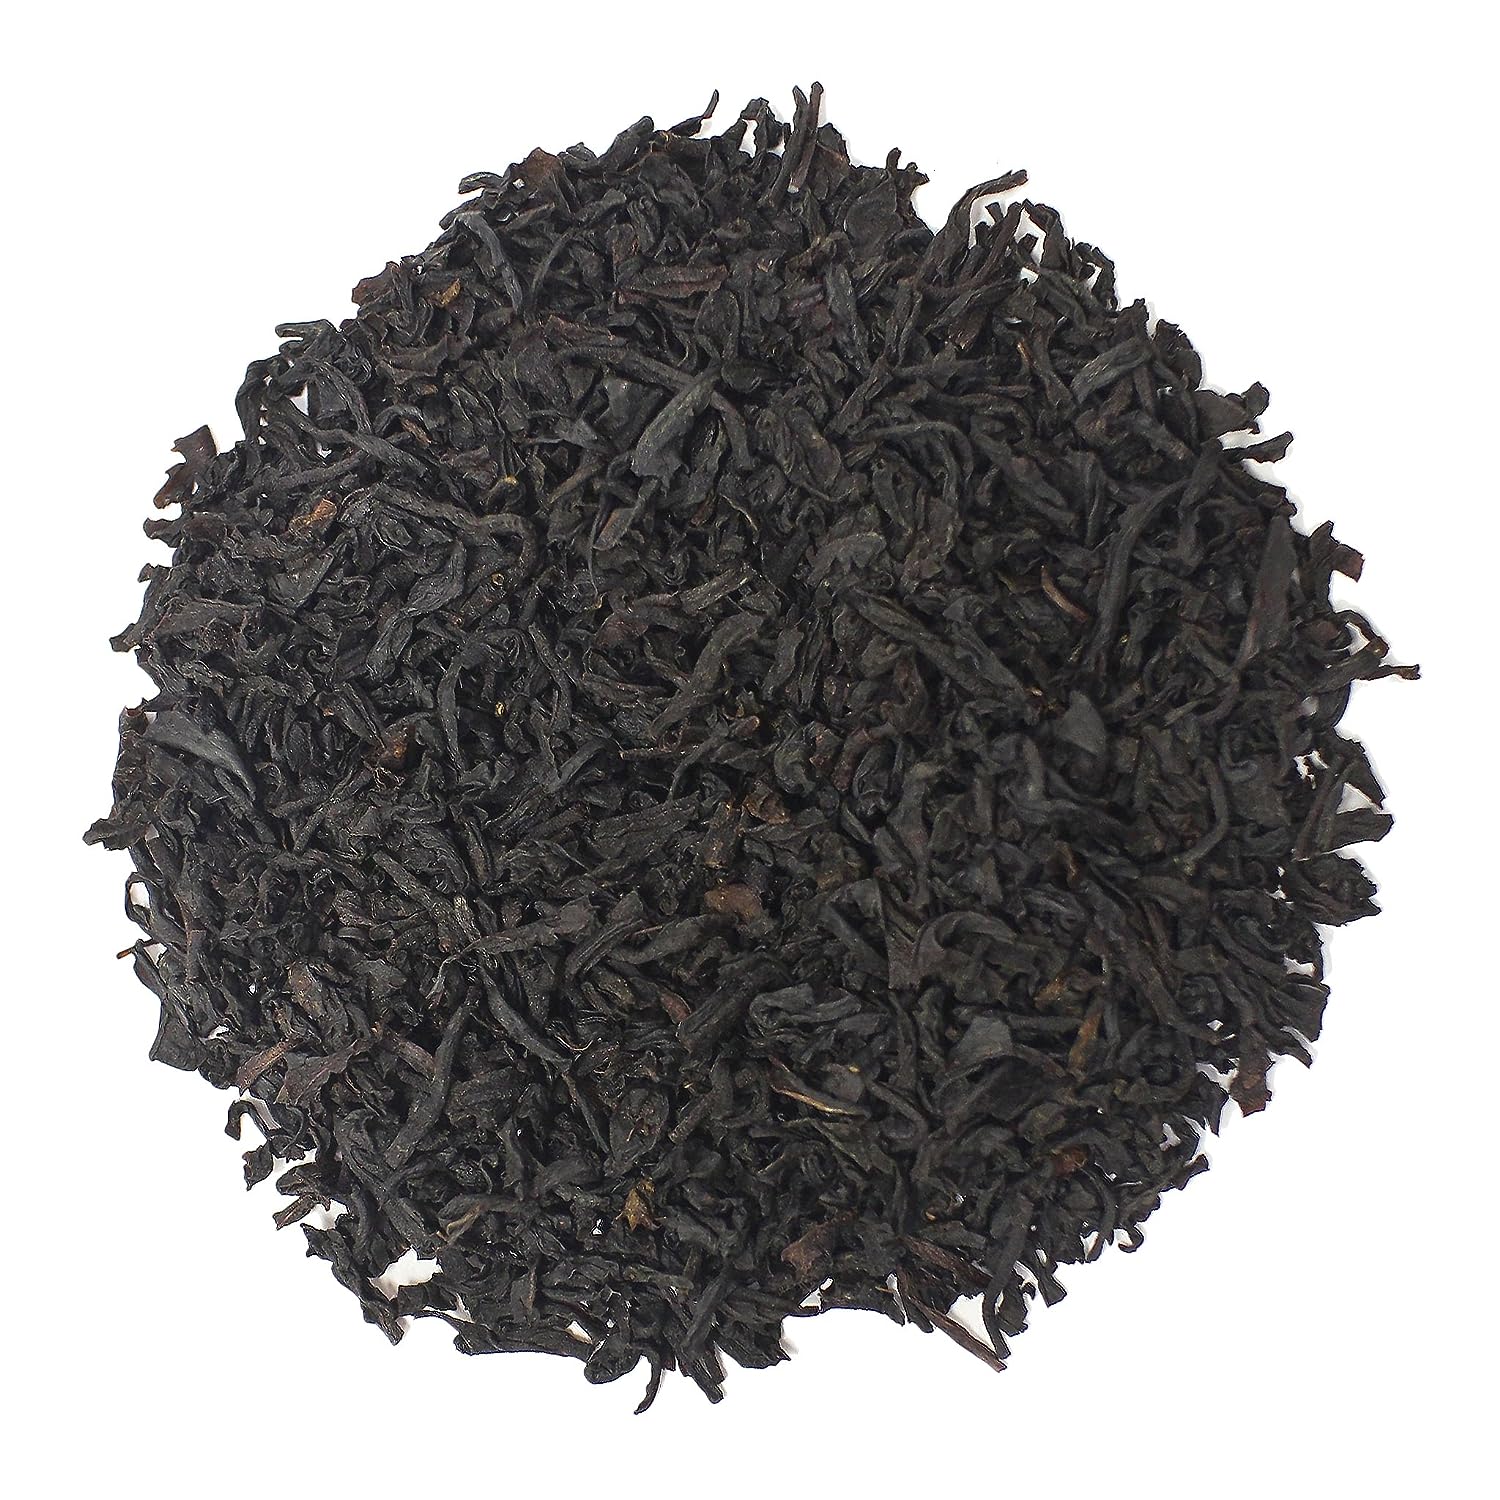 The Tea Farm - Hazelnut Black Nut Tea - Loose Leaf Black Tea